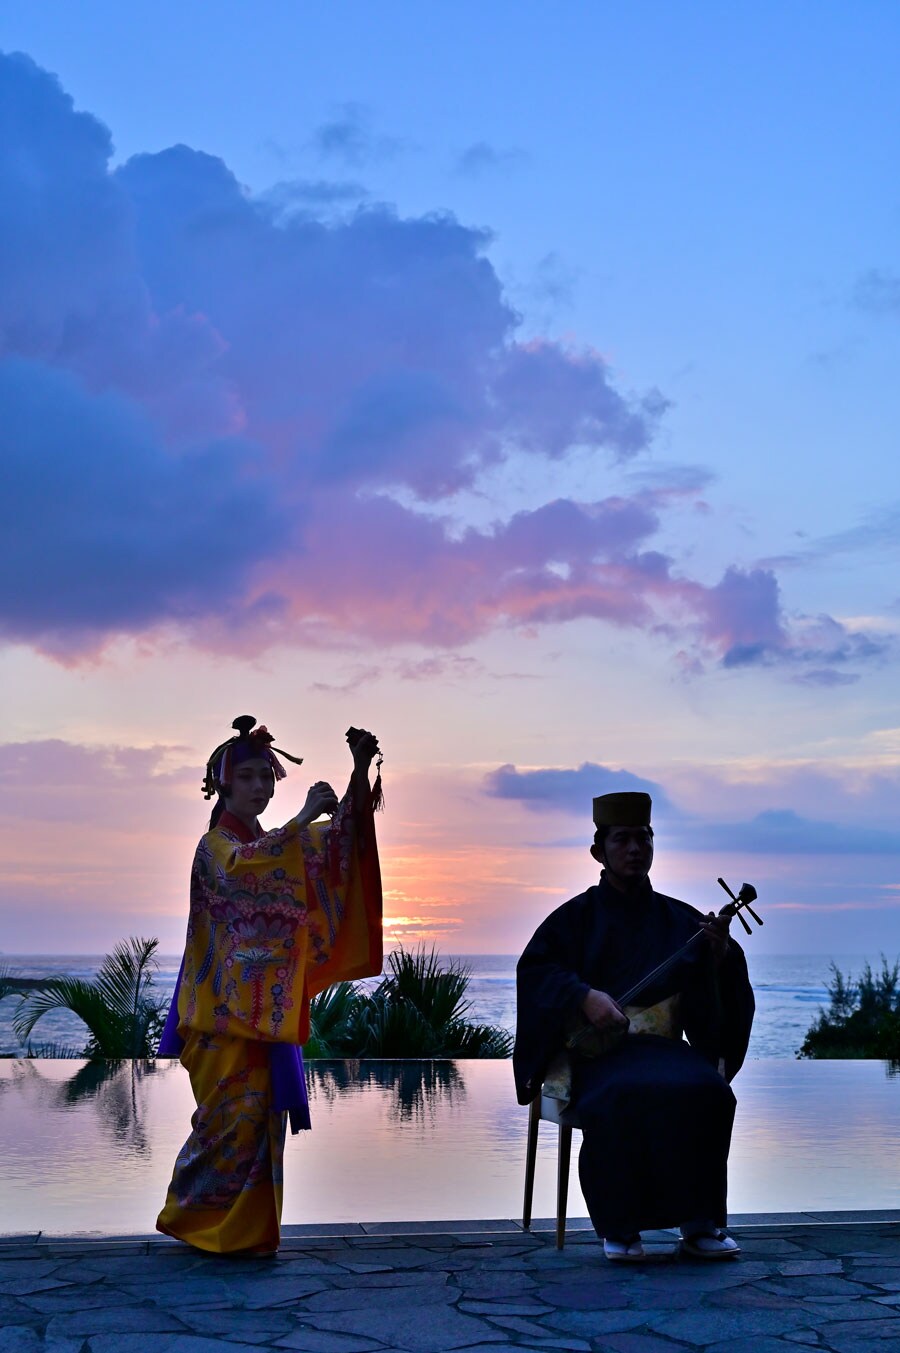 琉球舞踊と謡を楽しむ特別な体験もアレンジ可能 (事前に要予約)。